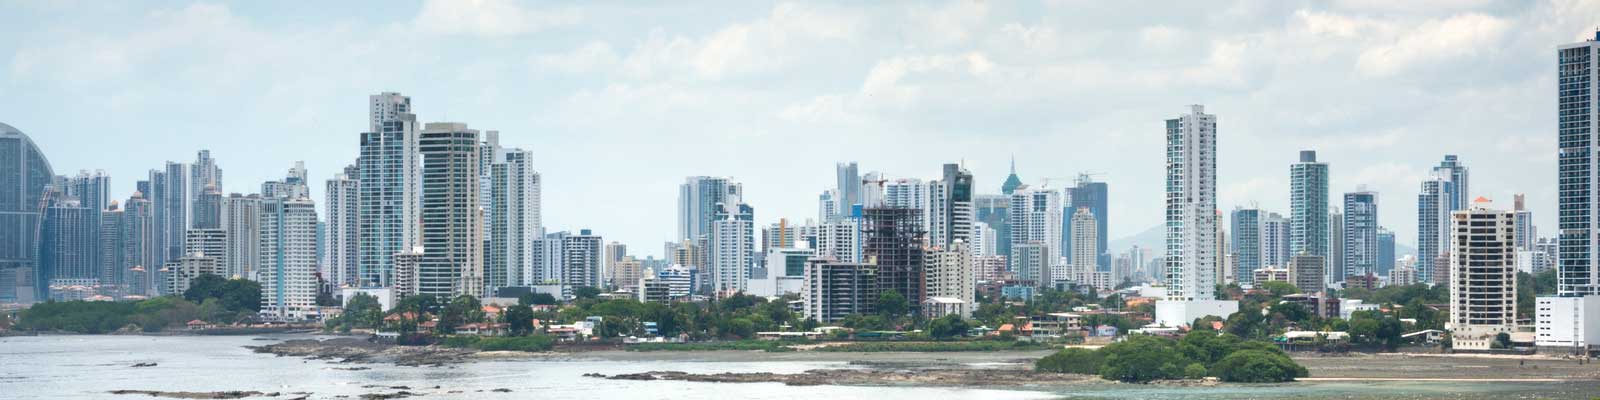 Panamá Immobilien - Büros, Bauflächen, Hotels - Bauen, Investieren, Mieten